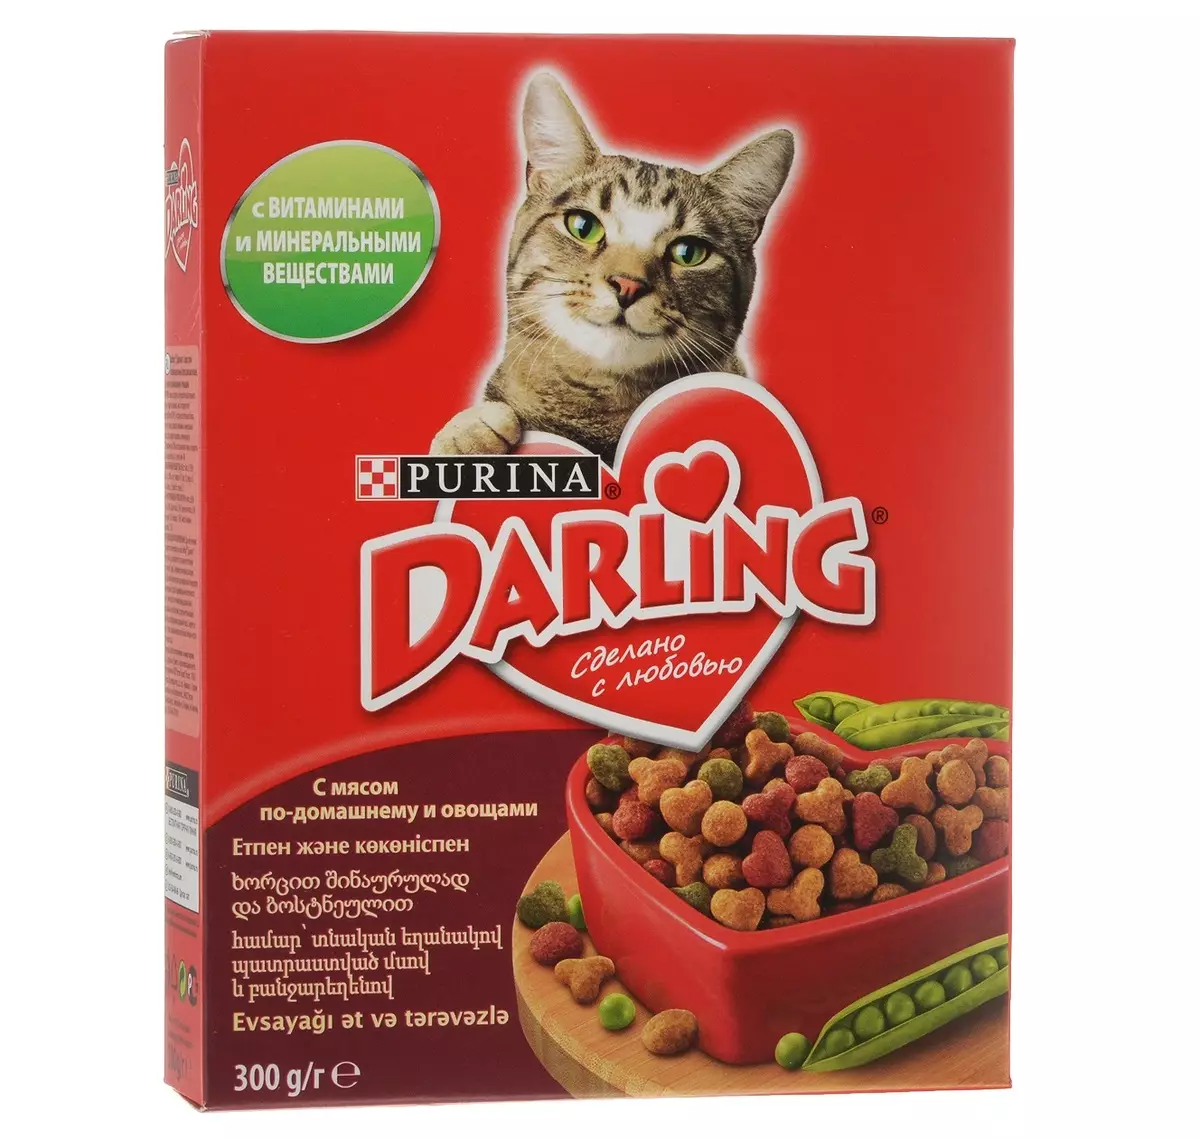 Котешка храна Darling: Feline суха храна от Purina в опаковки 2 кг и 10 кг, различни видове, състав и рецензии 22732_14